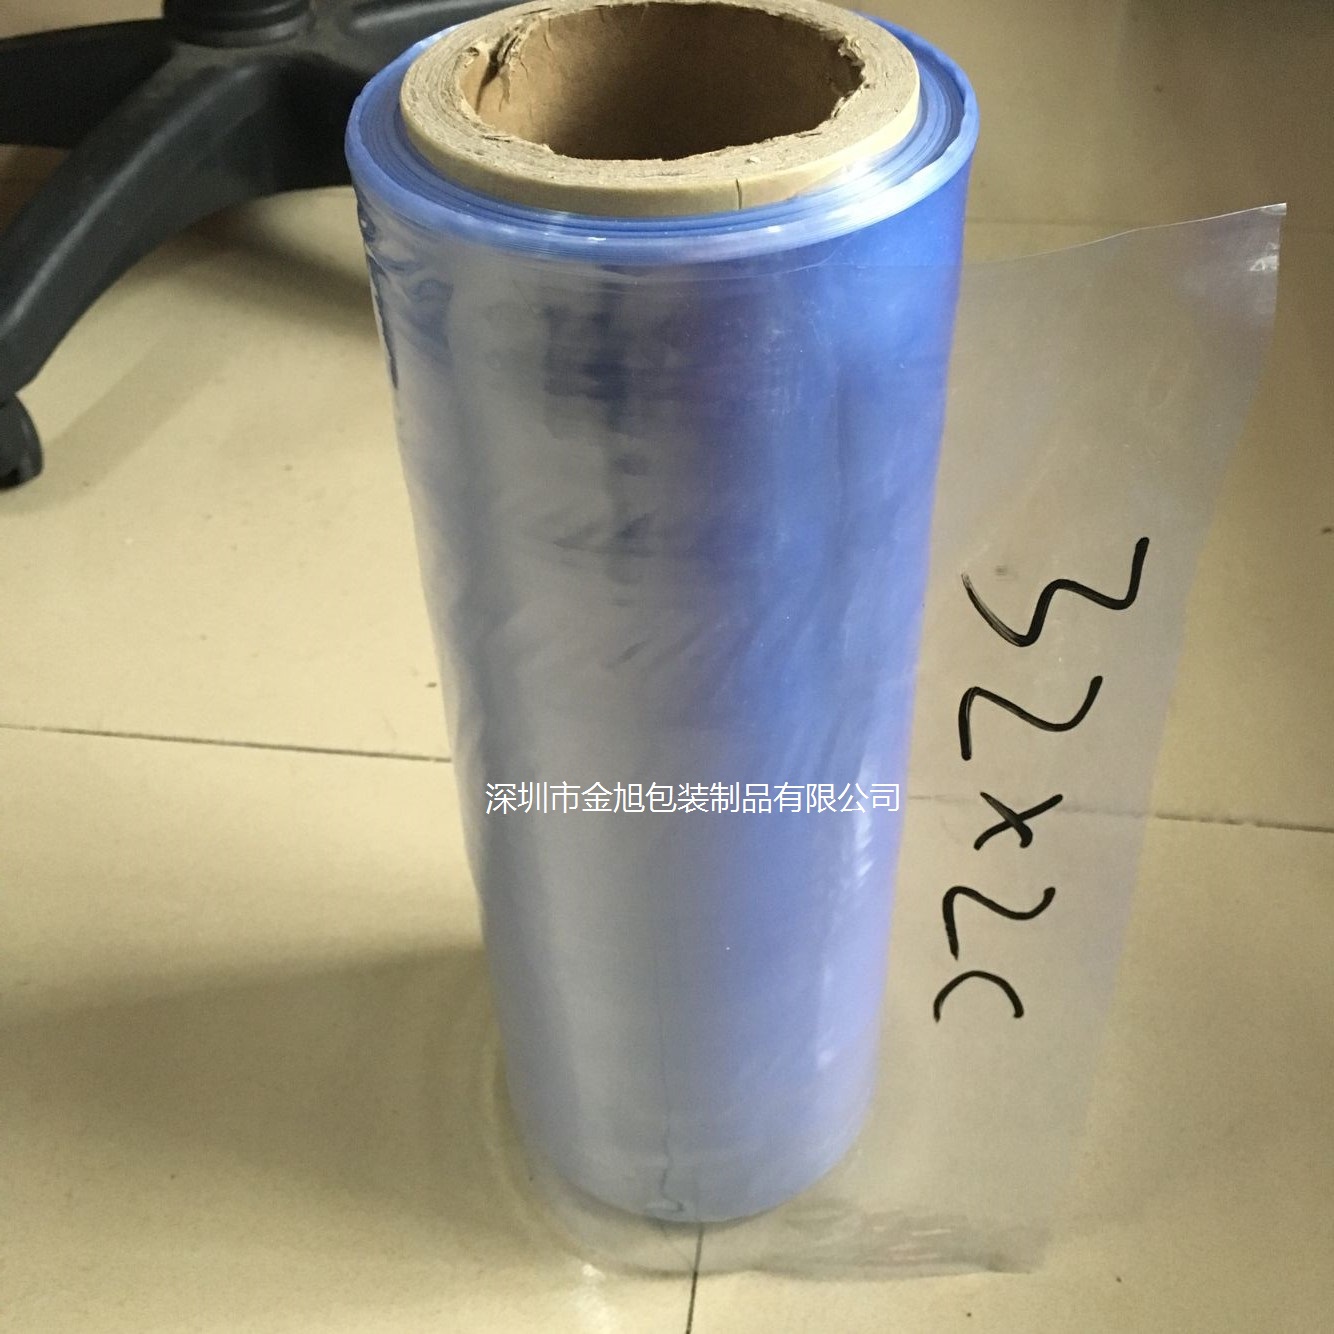 深圳市淡蓝色PVC包装膜低价供应批发